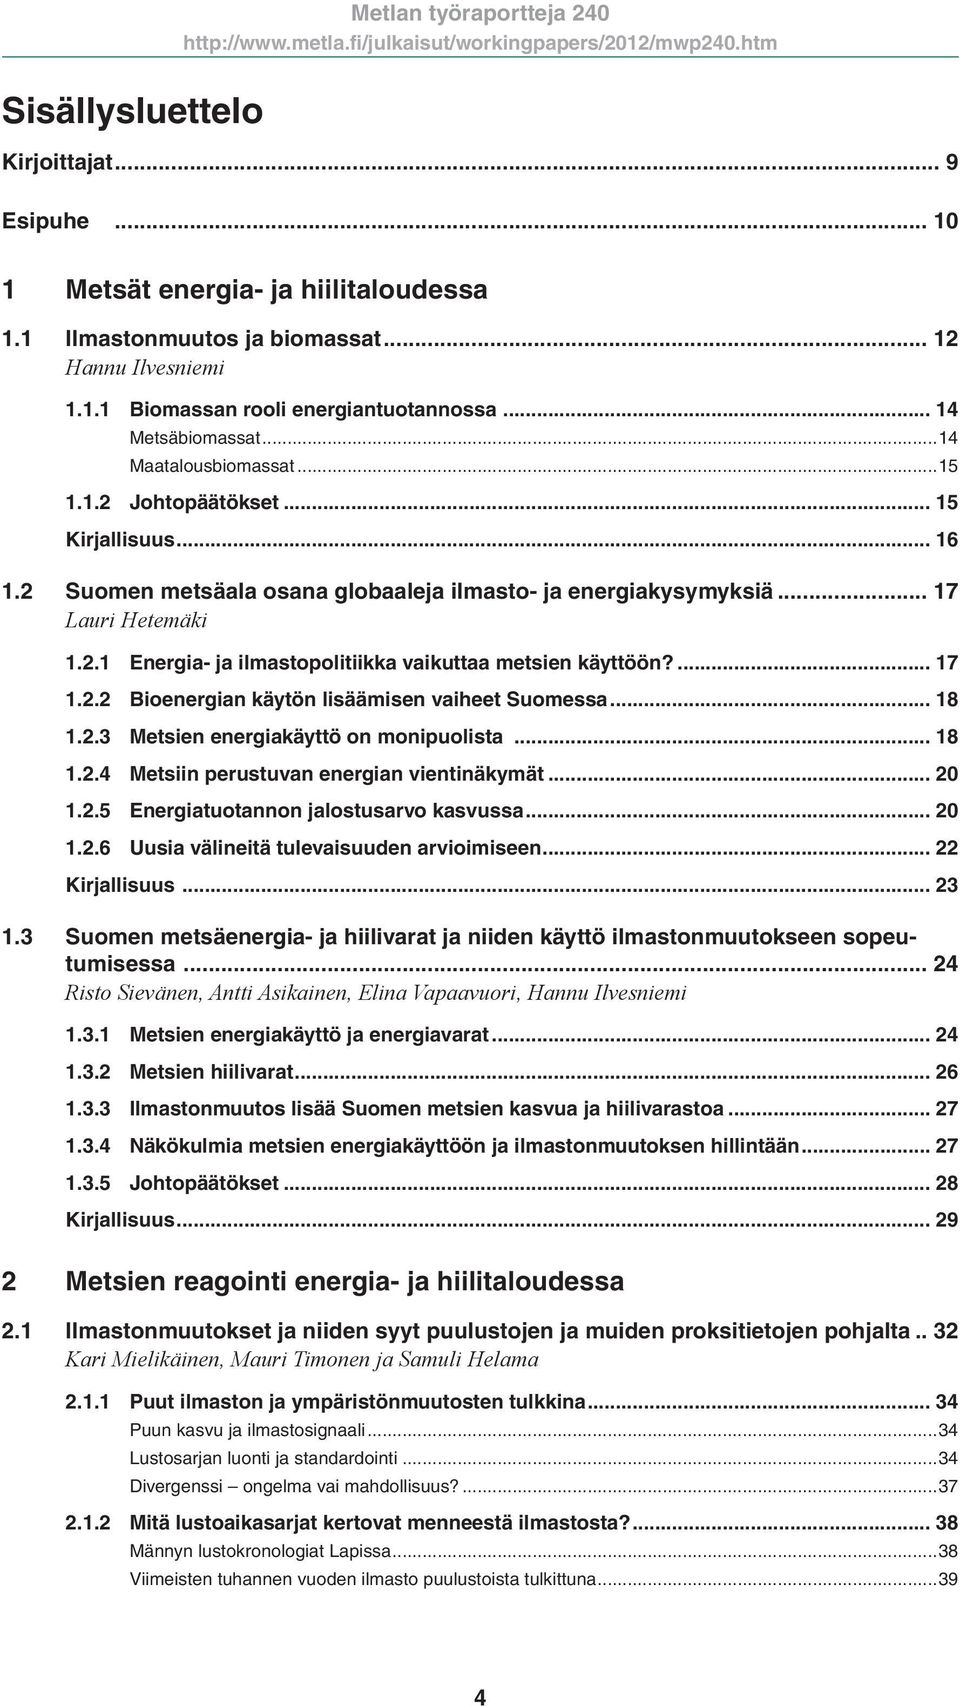 ... 17 1.2.2 Bioenergian käytön lisäämisen vaiheet Suomessa... 18 1.2.3 Metsien energiakäyttö on monipuolista... 18 1.2.4 Metsiin perustuvan energian vientinäkymät... 20 1.2.5 Energiatuotannon jalostusarvo kasvussa.